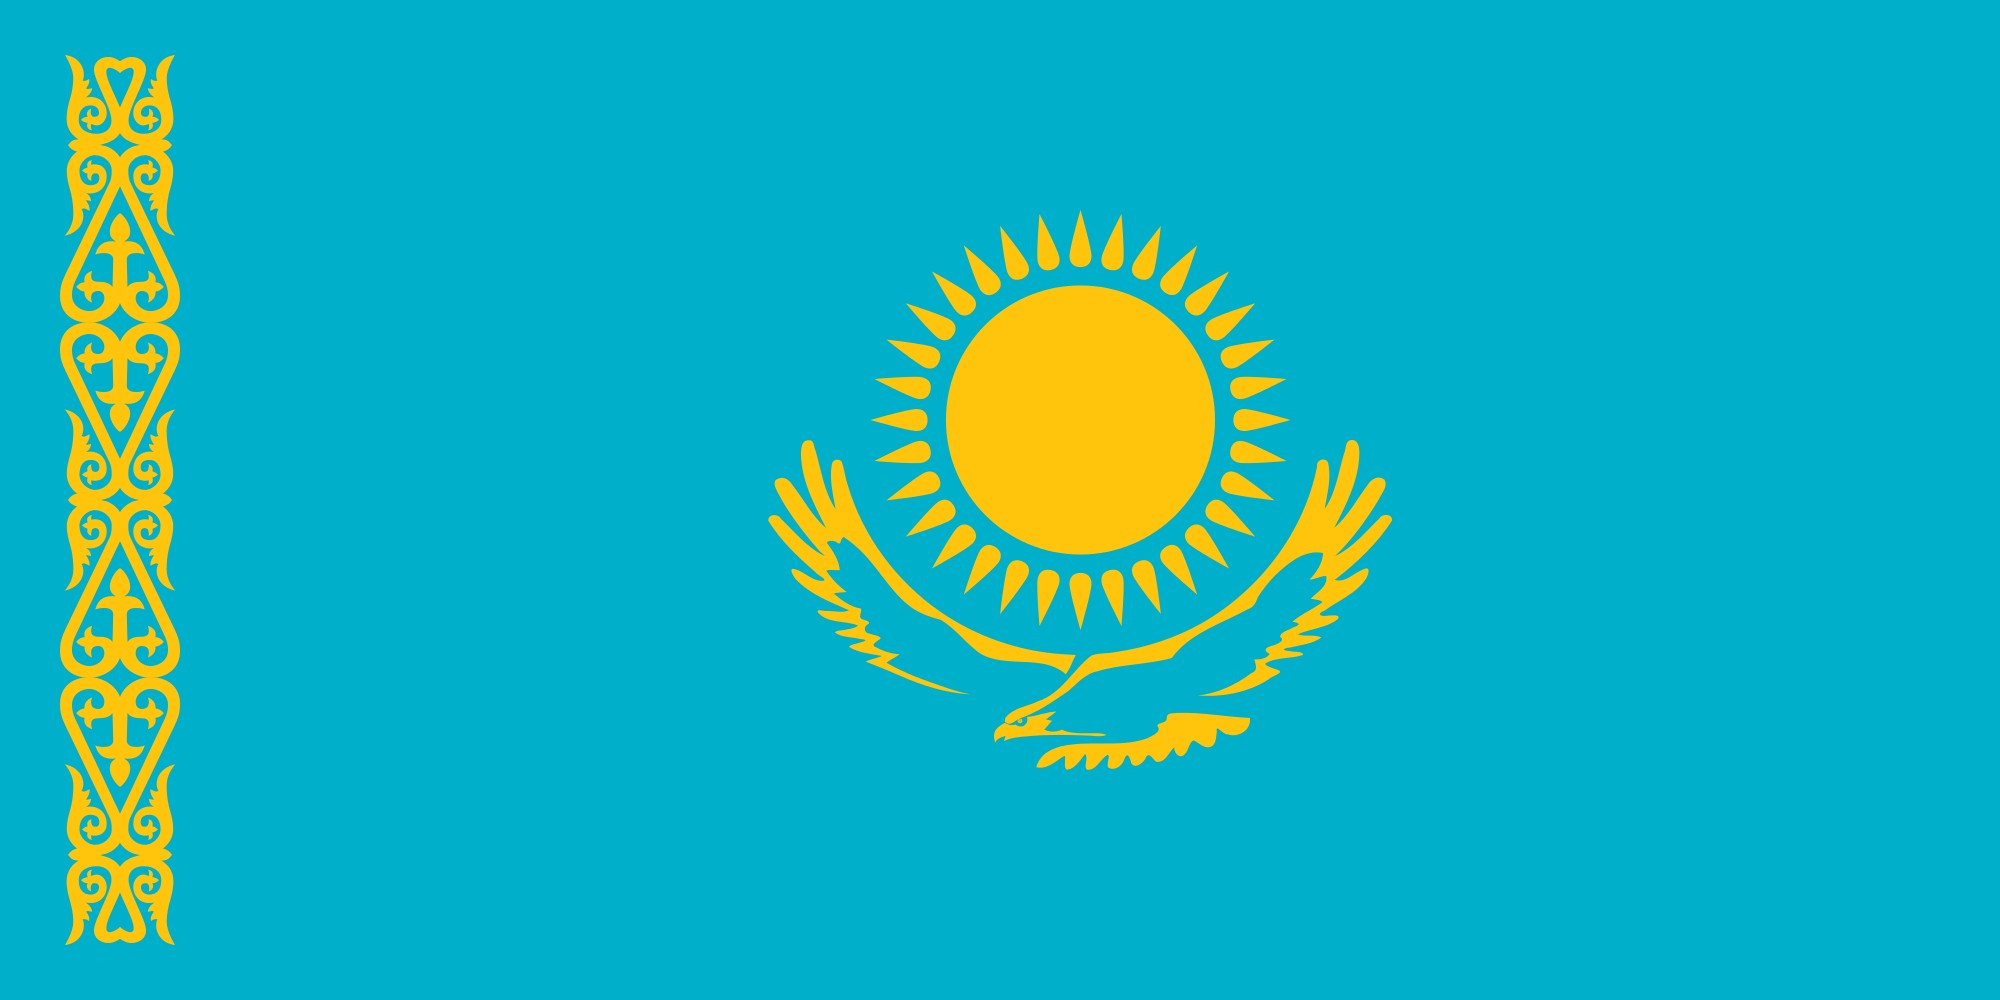 カザフスタンの世界遺産「コジャ・アハメド・ヤサウィ廟」へ 巡礼の旅